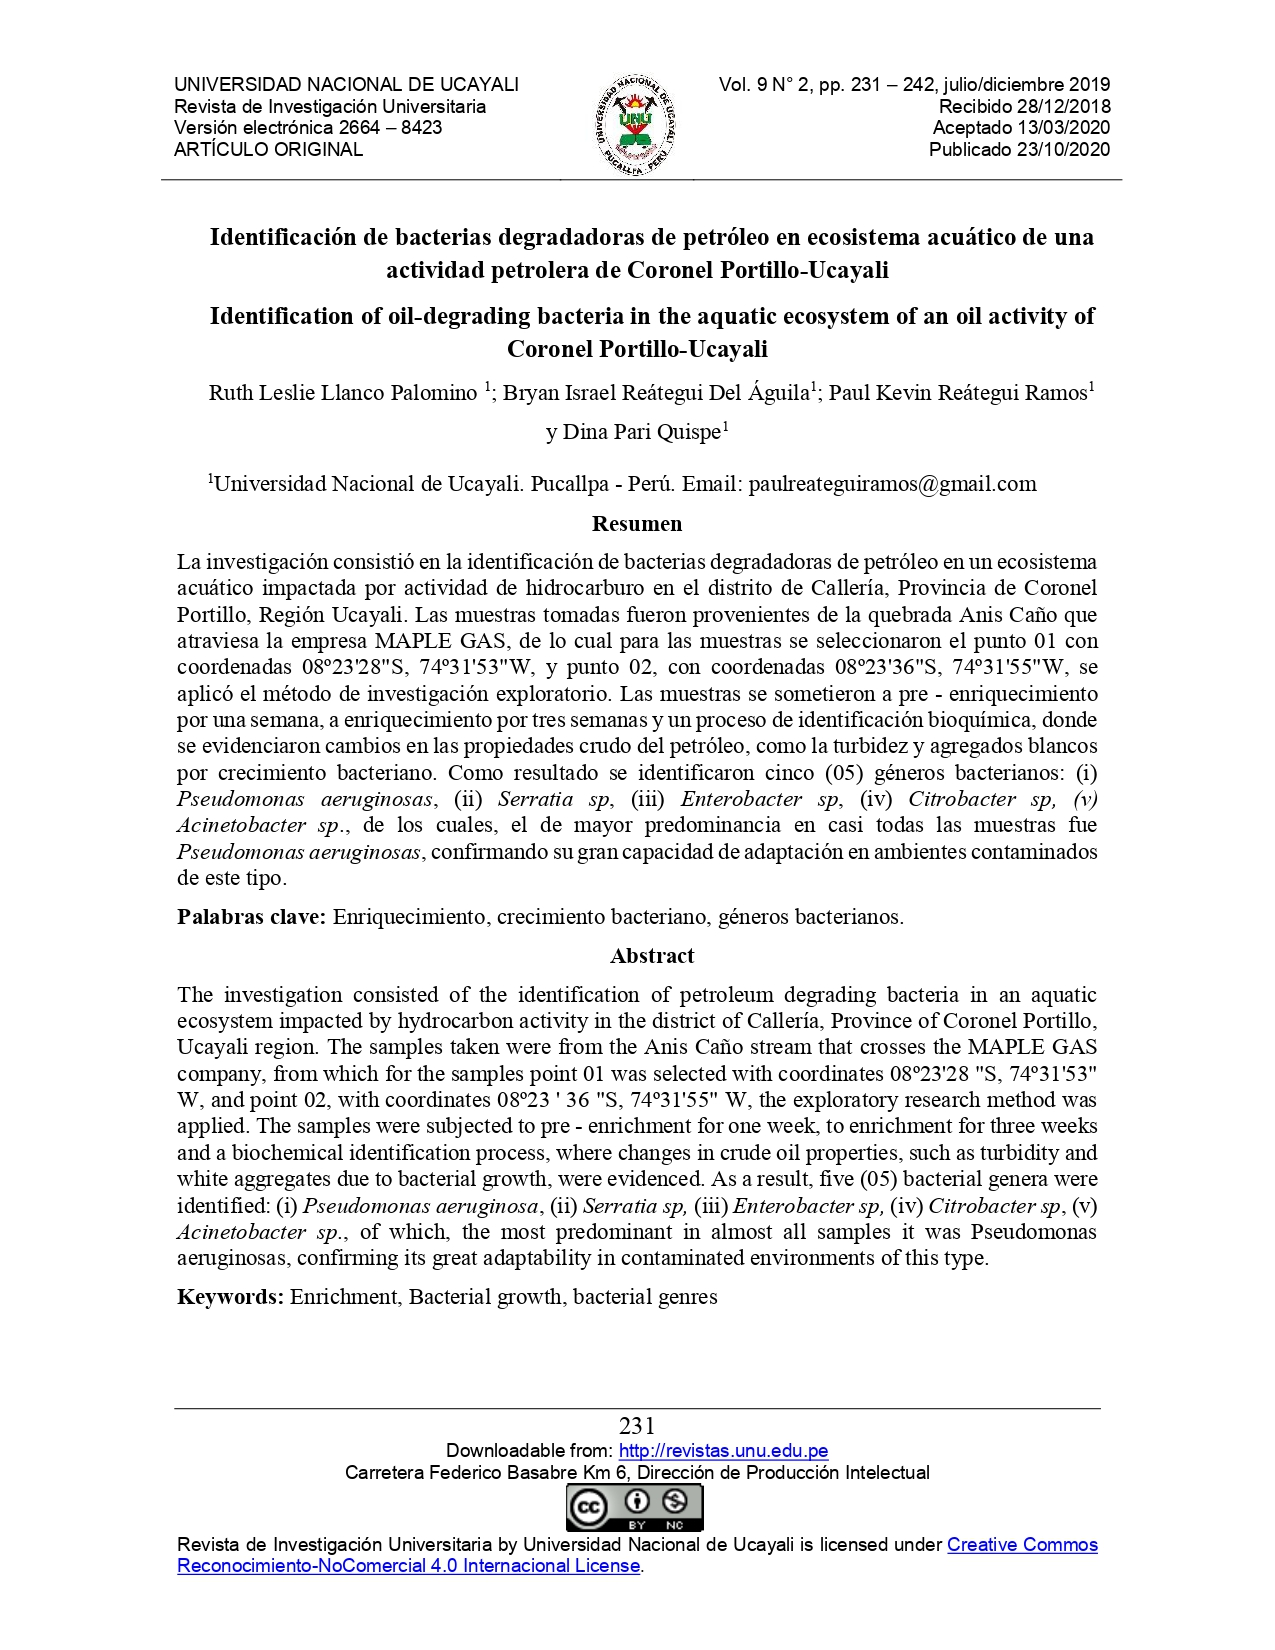 Identificación de bacterias degradadoras de petróleo en ecosistema acuático de una actividad petrolera de Coronel Portillo-Ucayali